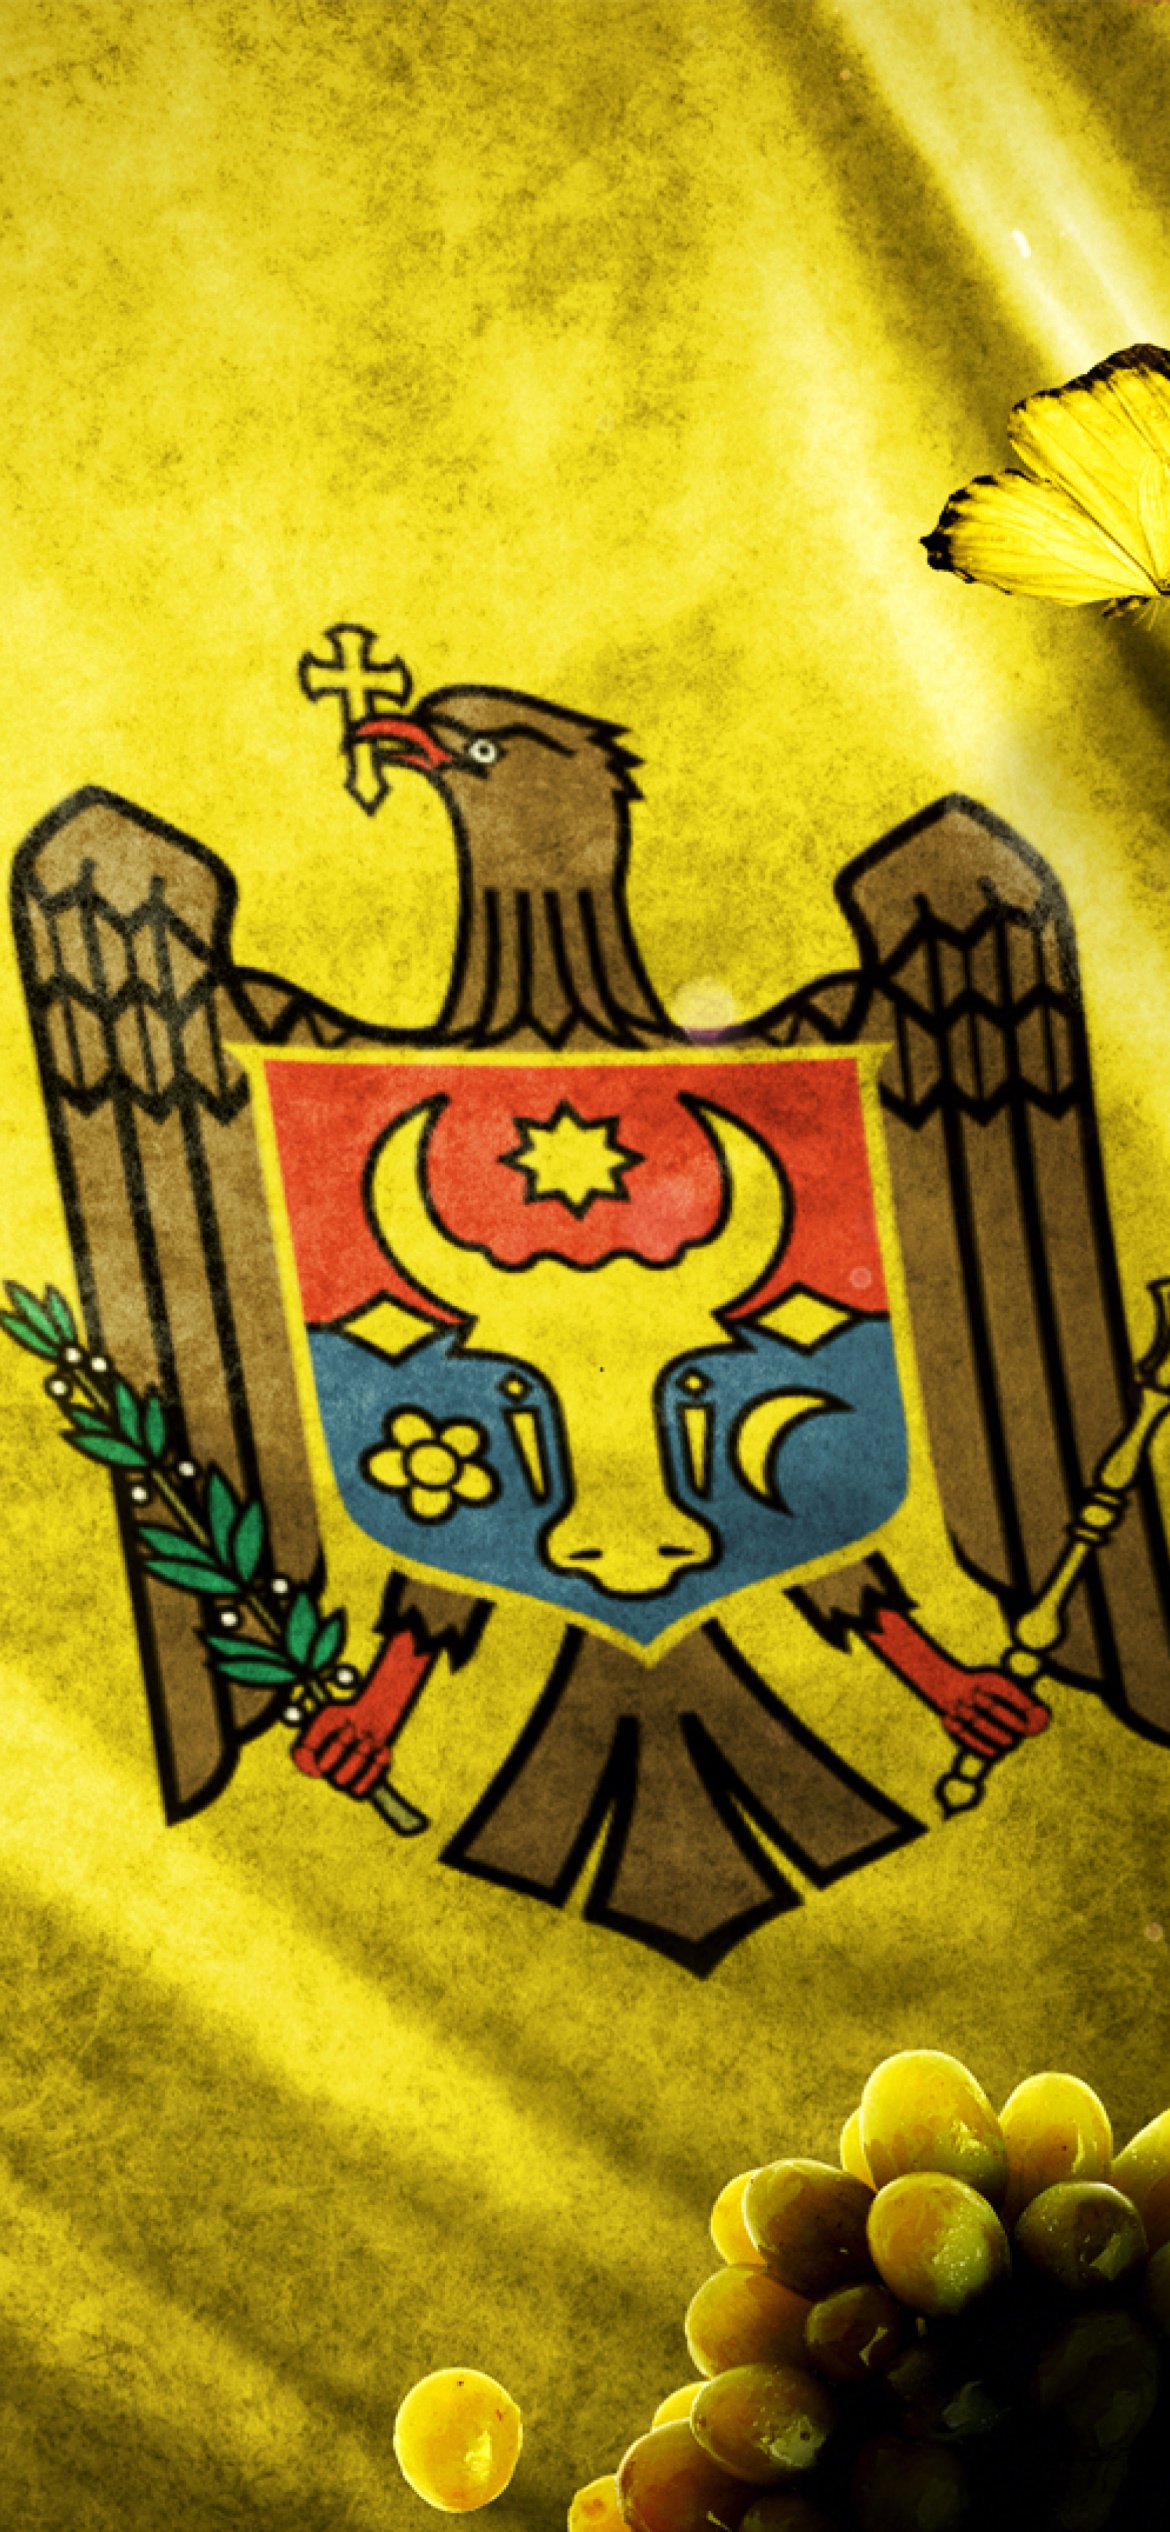 Moldova Flag Wallpapers